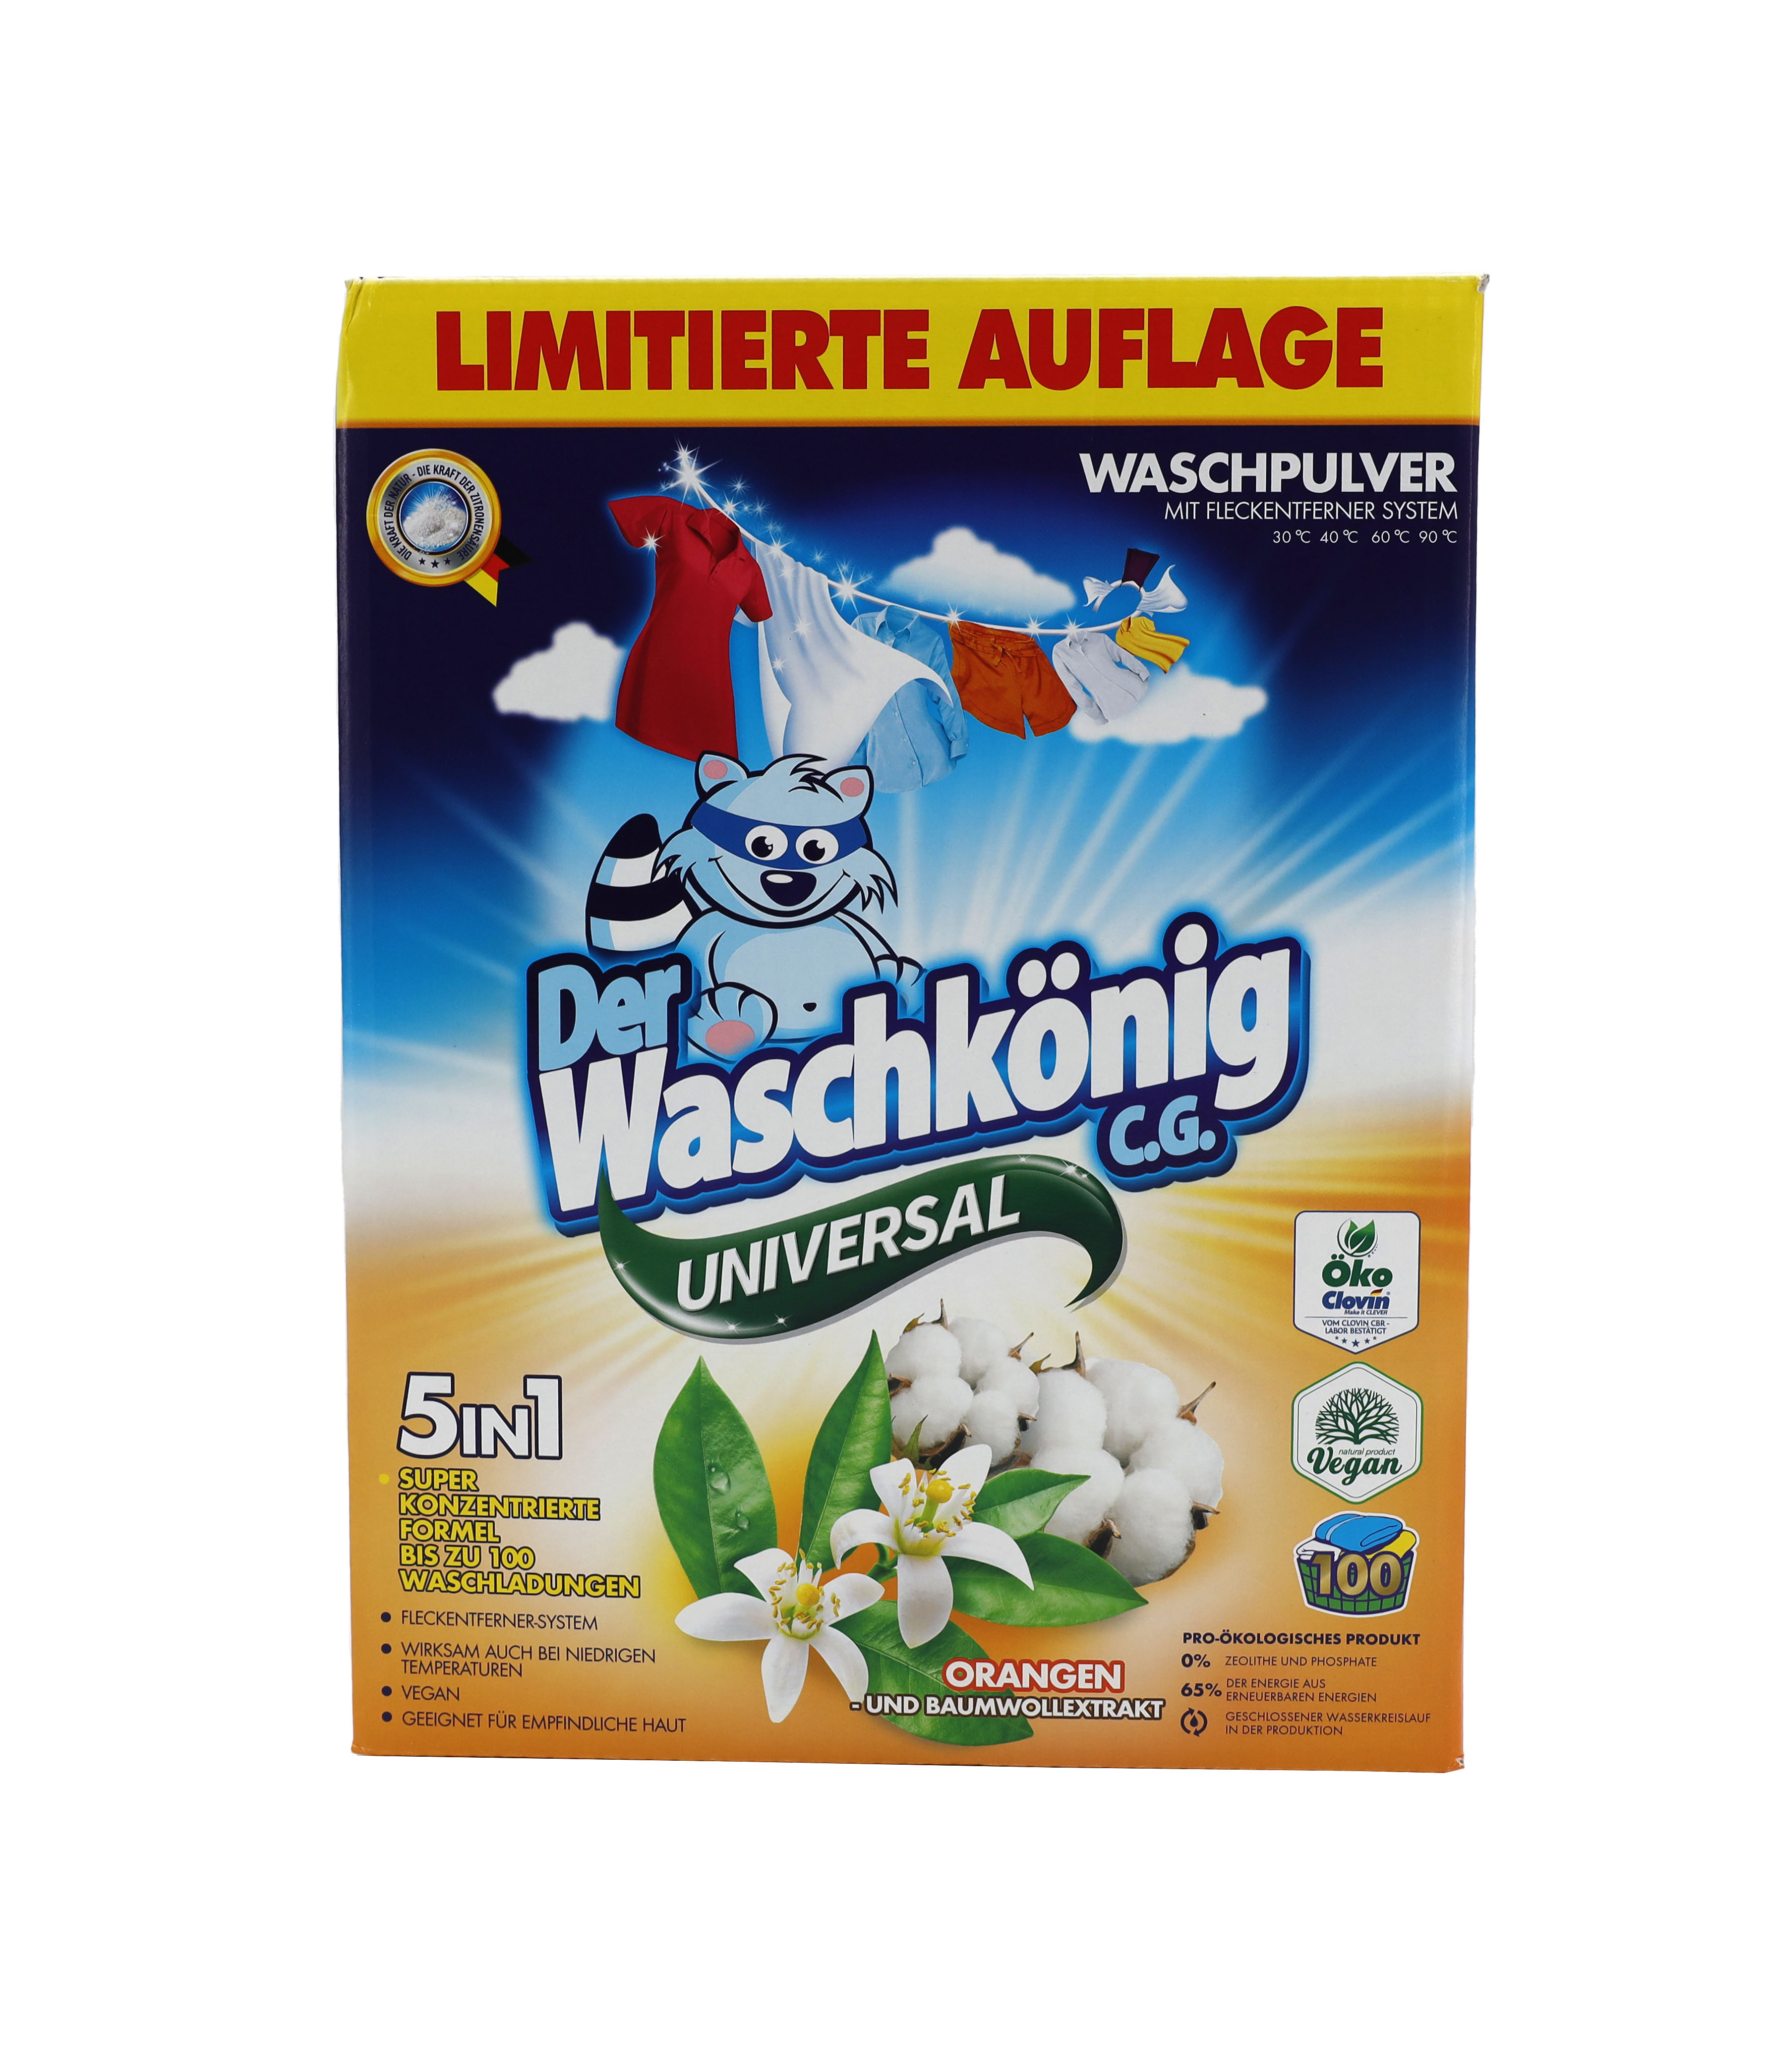 Waschkönig Waschpulver 6kg 100WL Orangenblüten & Baumwollextrakt